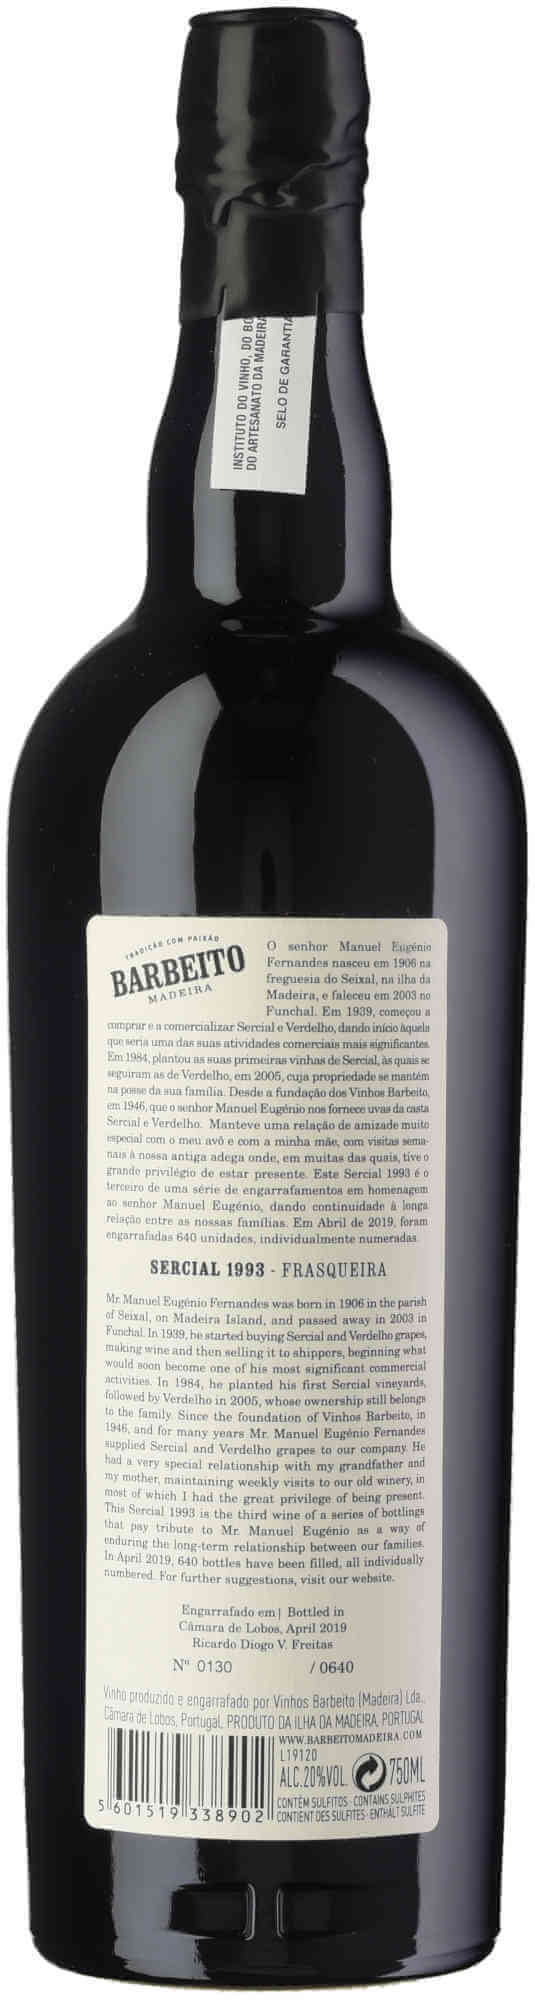 Barbeito-Sercial-Frasqueira-1993-back